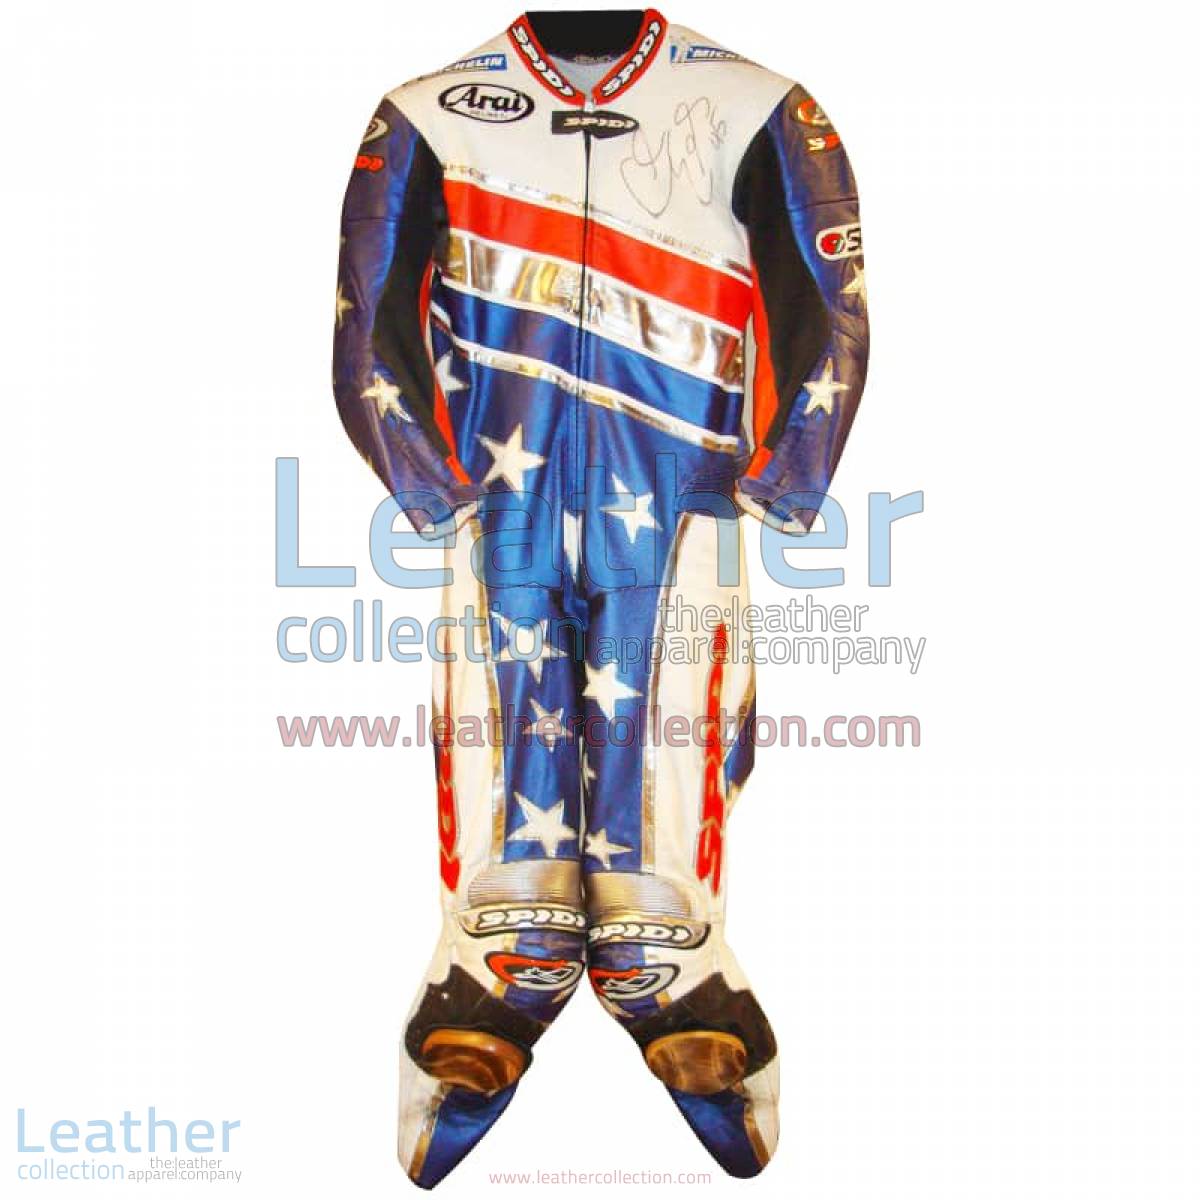 Colin Edwards Aprilia Leathers 2003 MotoGP Pre-season | aprilia leathers